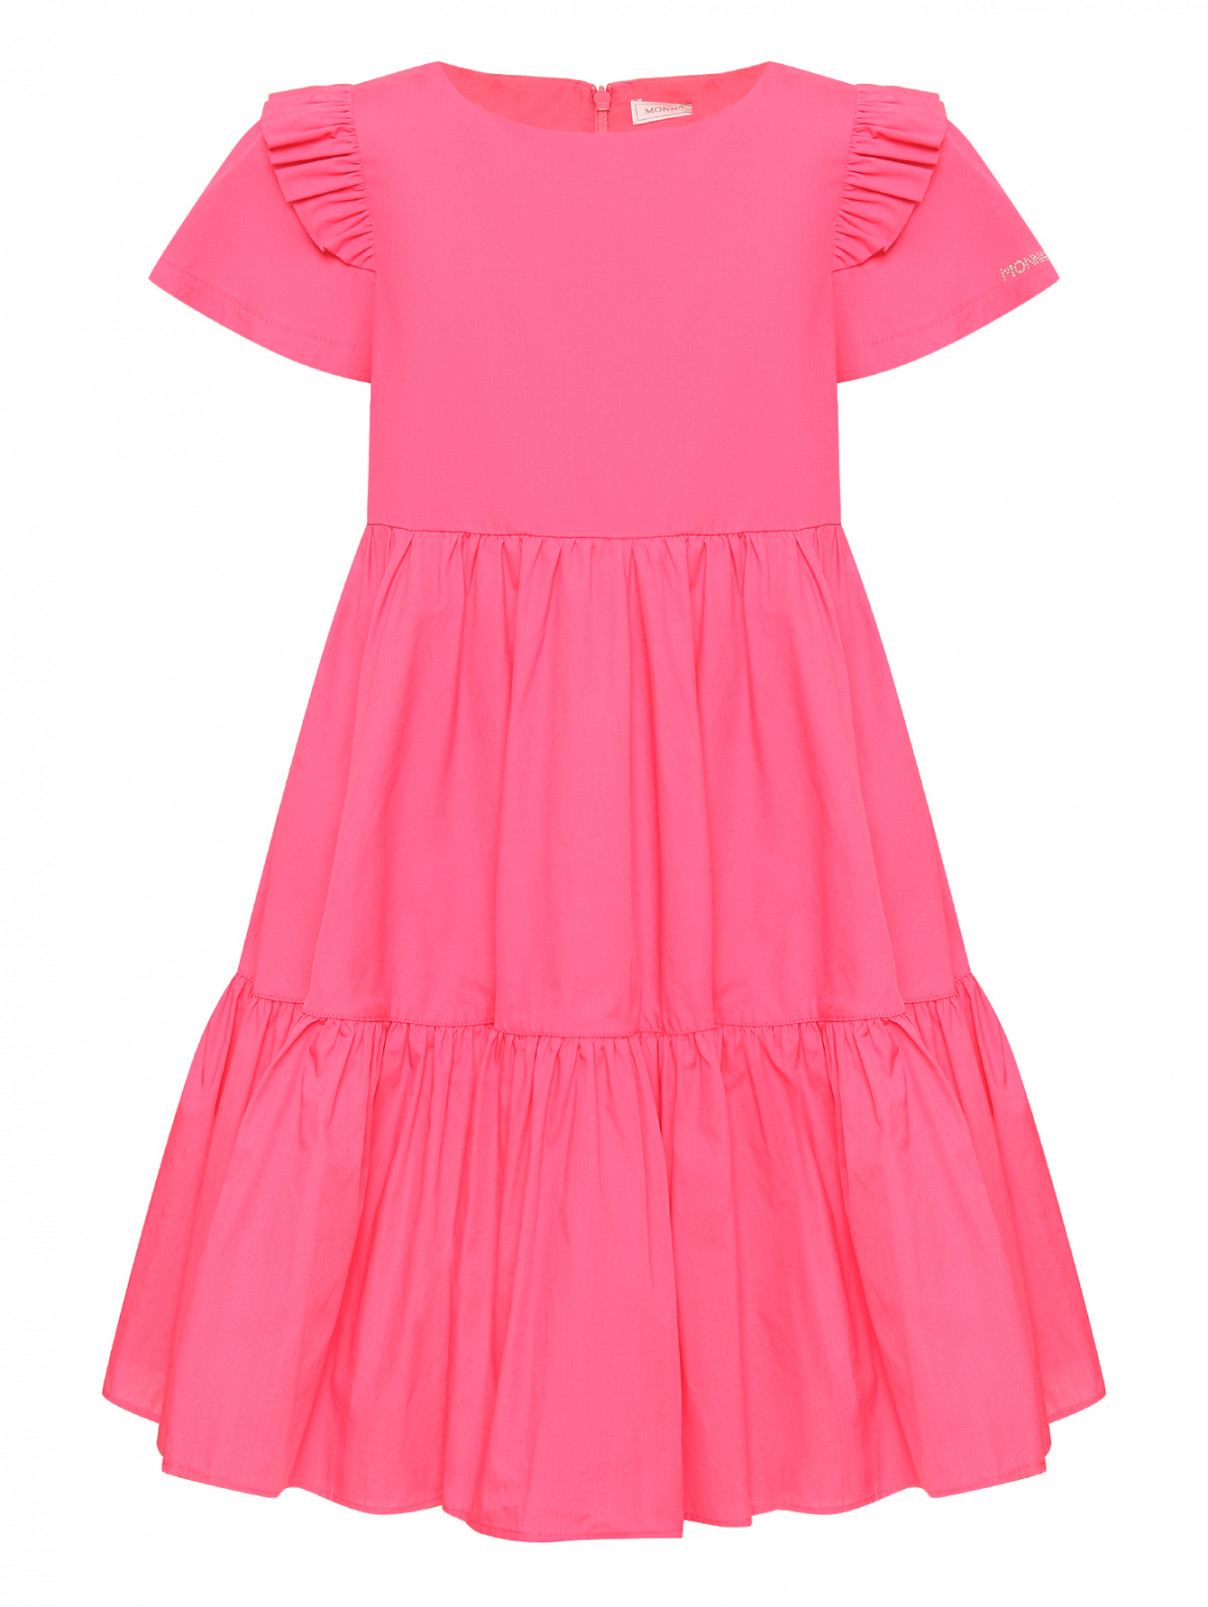 Платье из хлопка со стразами MONNALISA  –  Общий вид  – Цвет:  Розовый